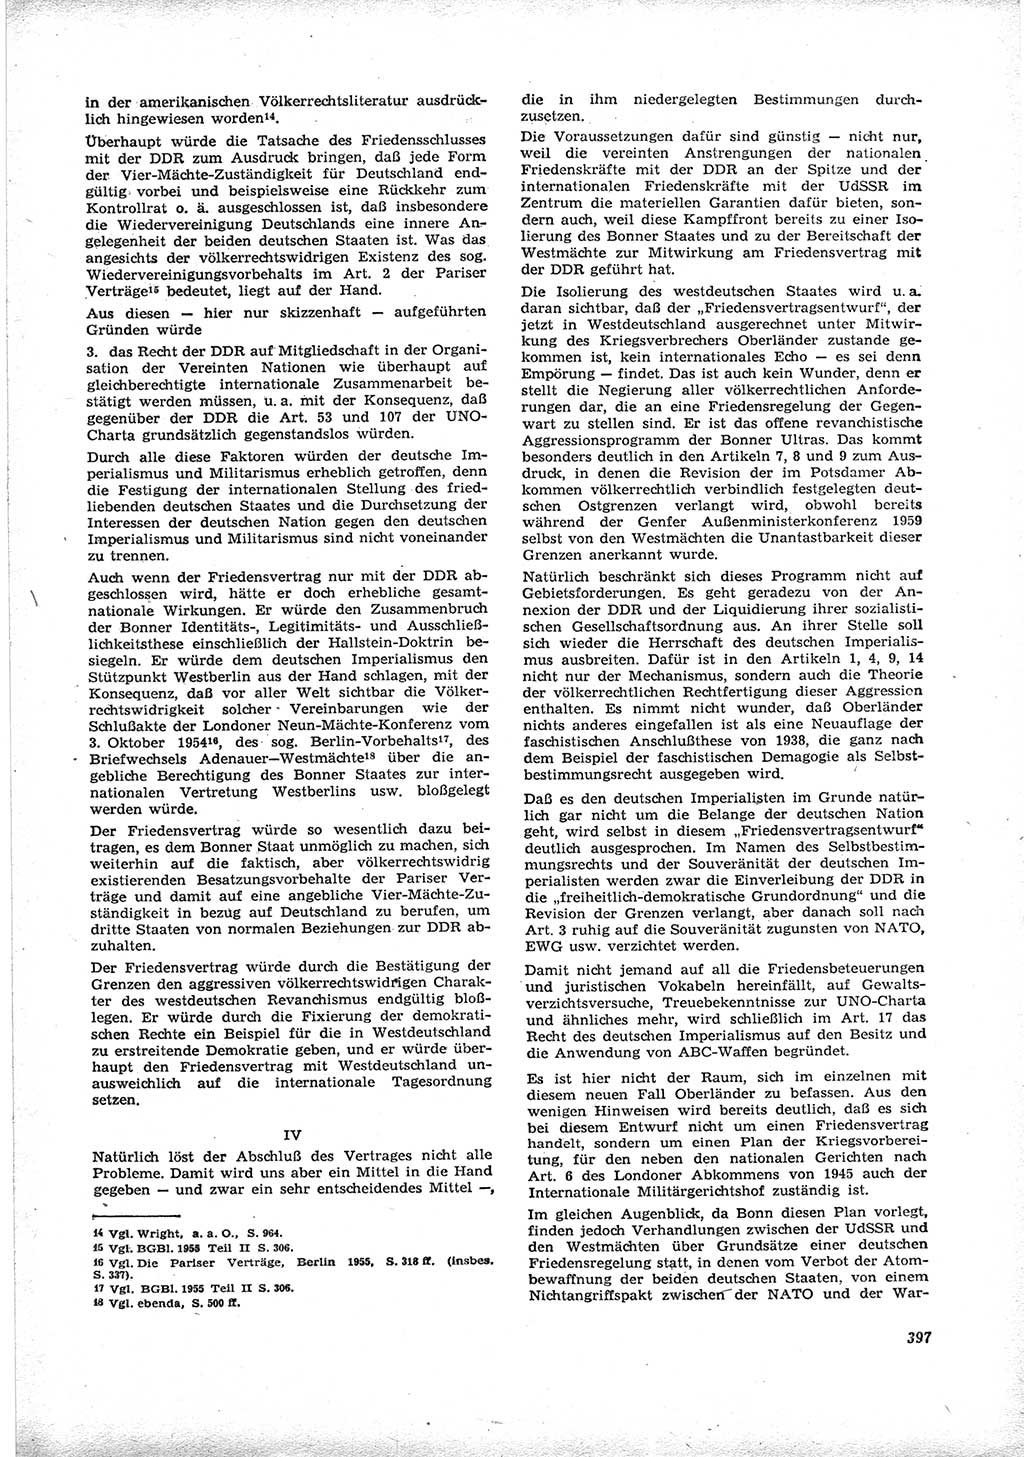 Neue Justiz (NJ), Zeitschrift für Recht und Rechtswissenschaft [Deutsche Demokratische Republik (DDR)], 16. Jahrgang 1962, Seite 397 (NJ DDR 1962, S. 397)